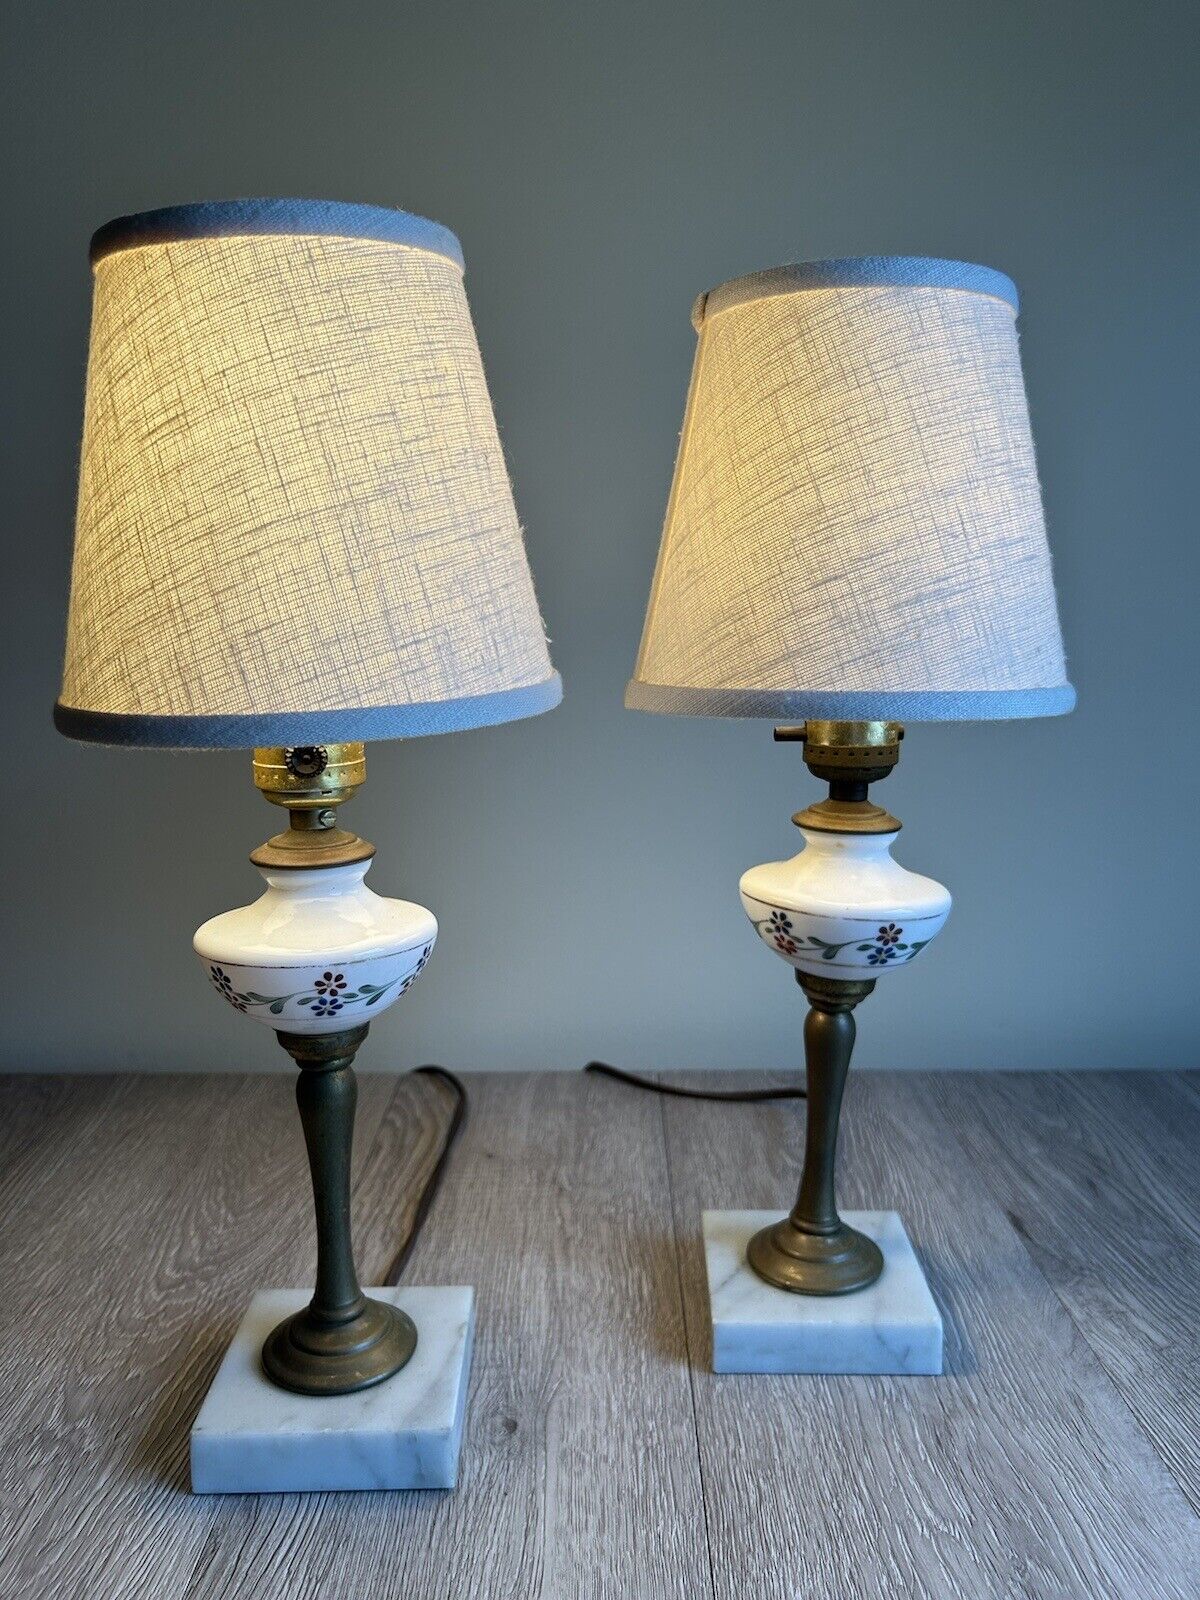 Set Of 2 Vintage Table Bedside Lamps Porcelain Brass & Marble/Stone Base Floral